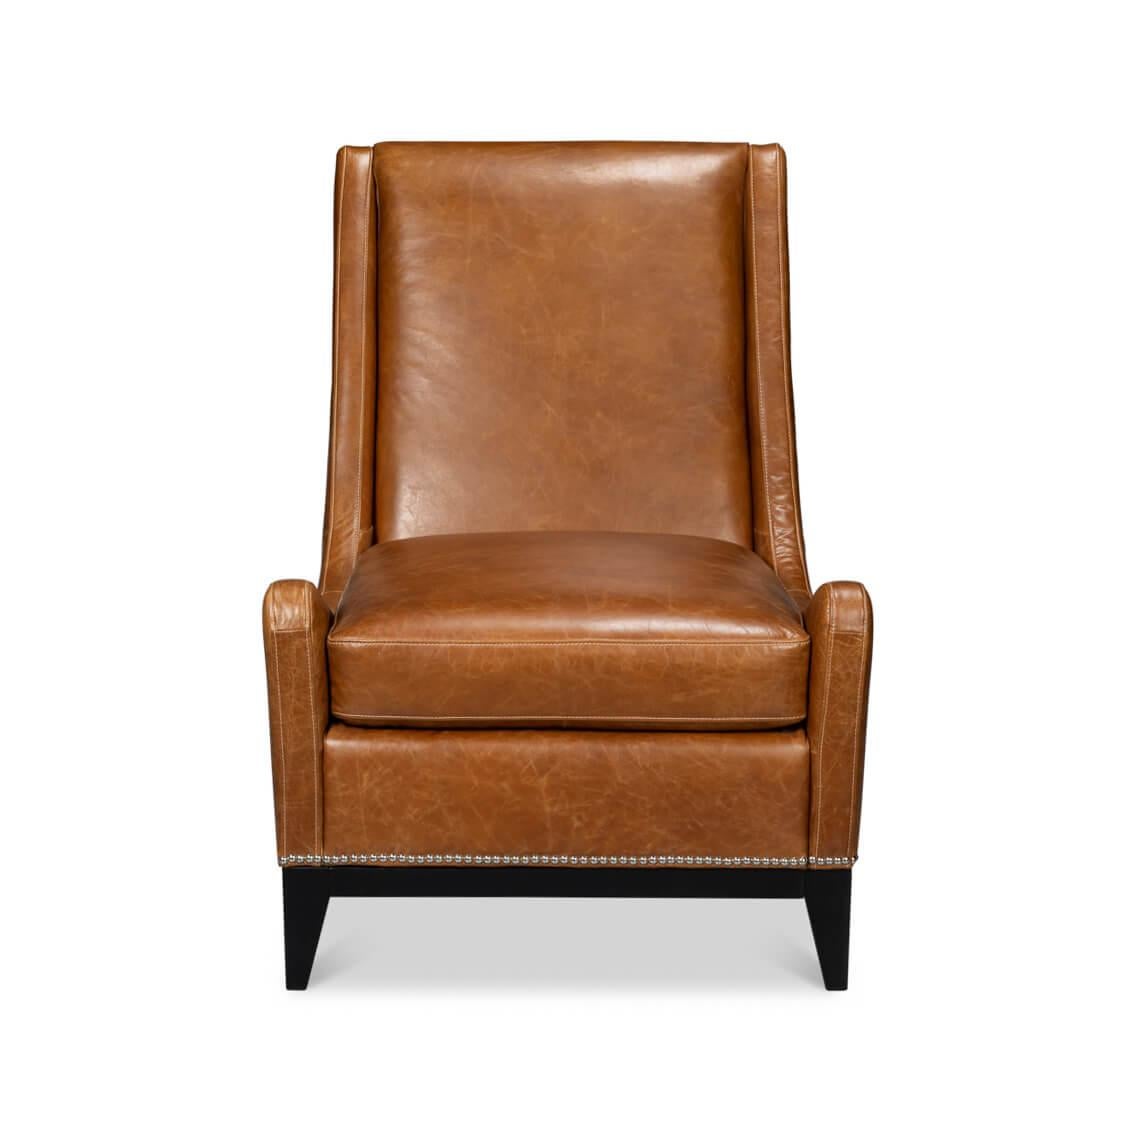 Dieser mit viel Liebe zum Detail gefertigte Sessel besteht aus geschmeidigem, genarbtem Leder, das Sie zum Sitzen und Entspannen einlädt. Das warme, satte kubanisch-braune Leder wird durch die klassische Nagelkopfverzierung wunderbar ergänzt und